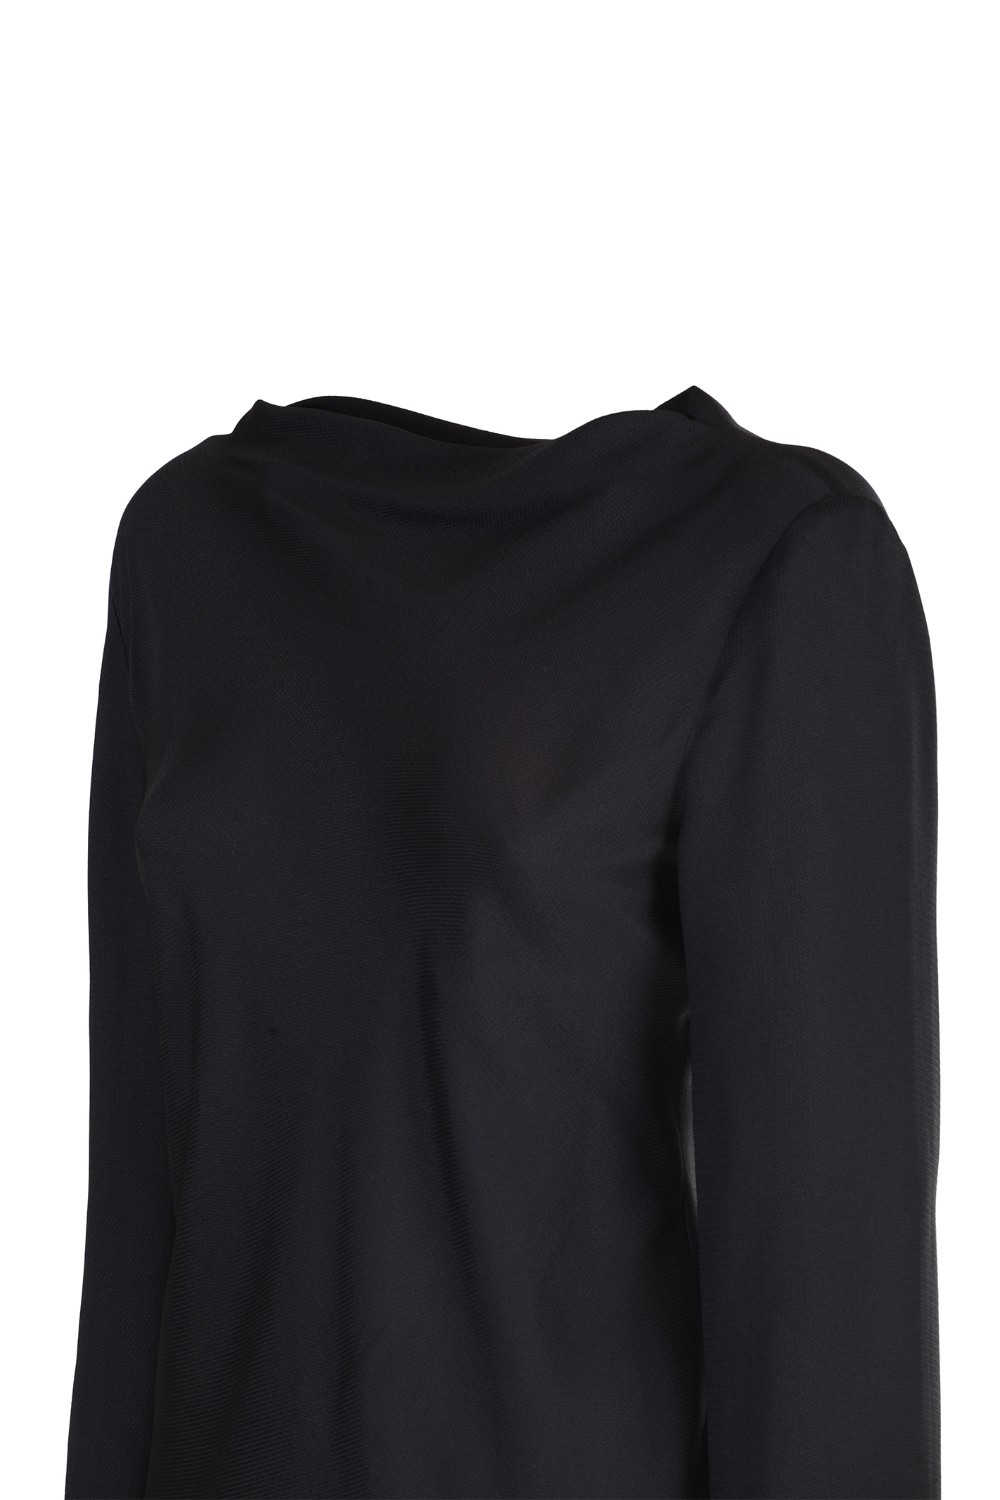 shop EMPORIO ARMANI  Camicia: Emporio Armani blusa nera in seta.
Scollo a barca.
Maniche lunghe.
Composizione: 89% acetato 11% seta.
Made in Bulgaria.. 9NK13T 92308-999 number 1104564